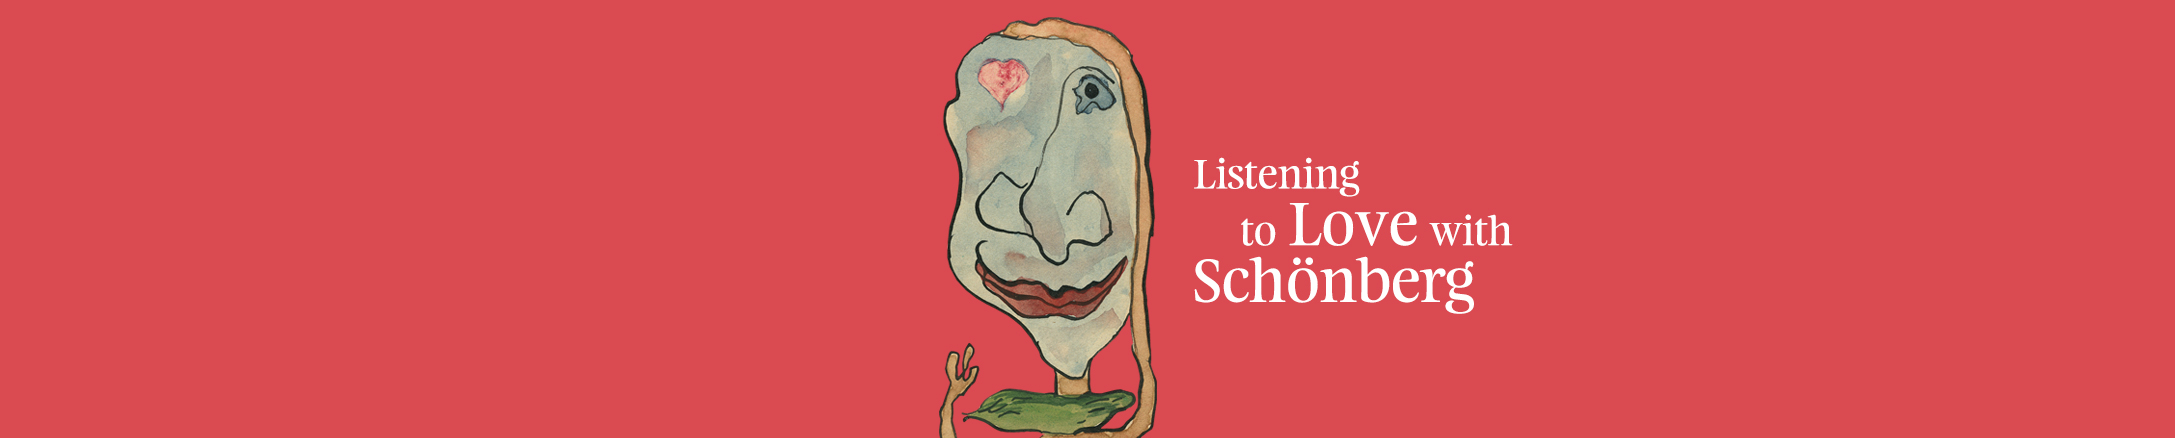 Exhibition "Listening to Love with Schönberg"